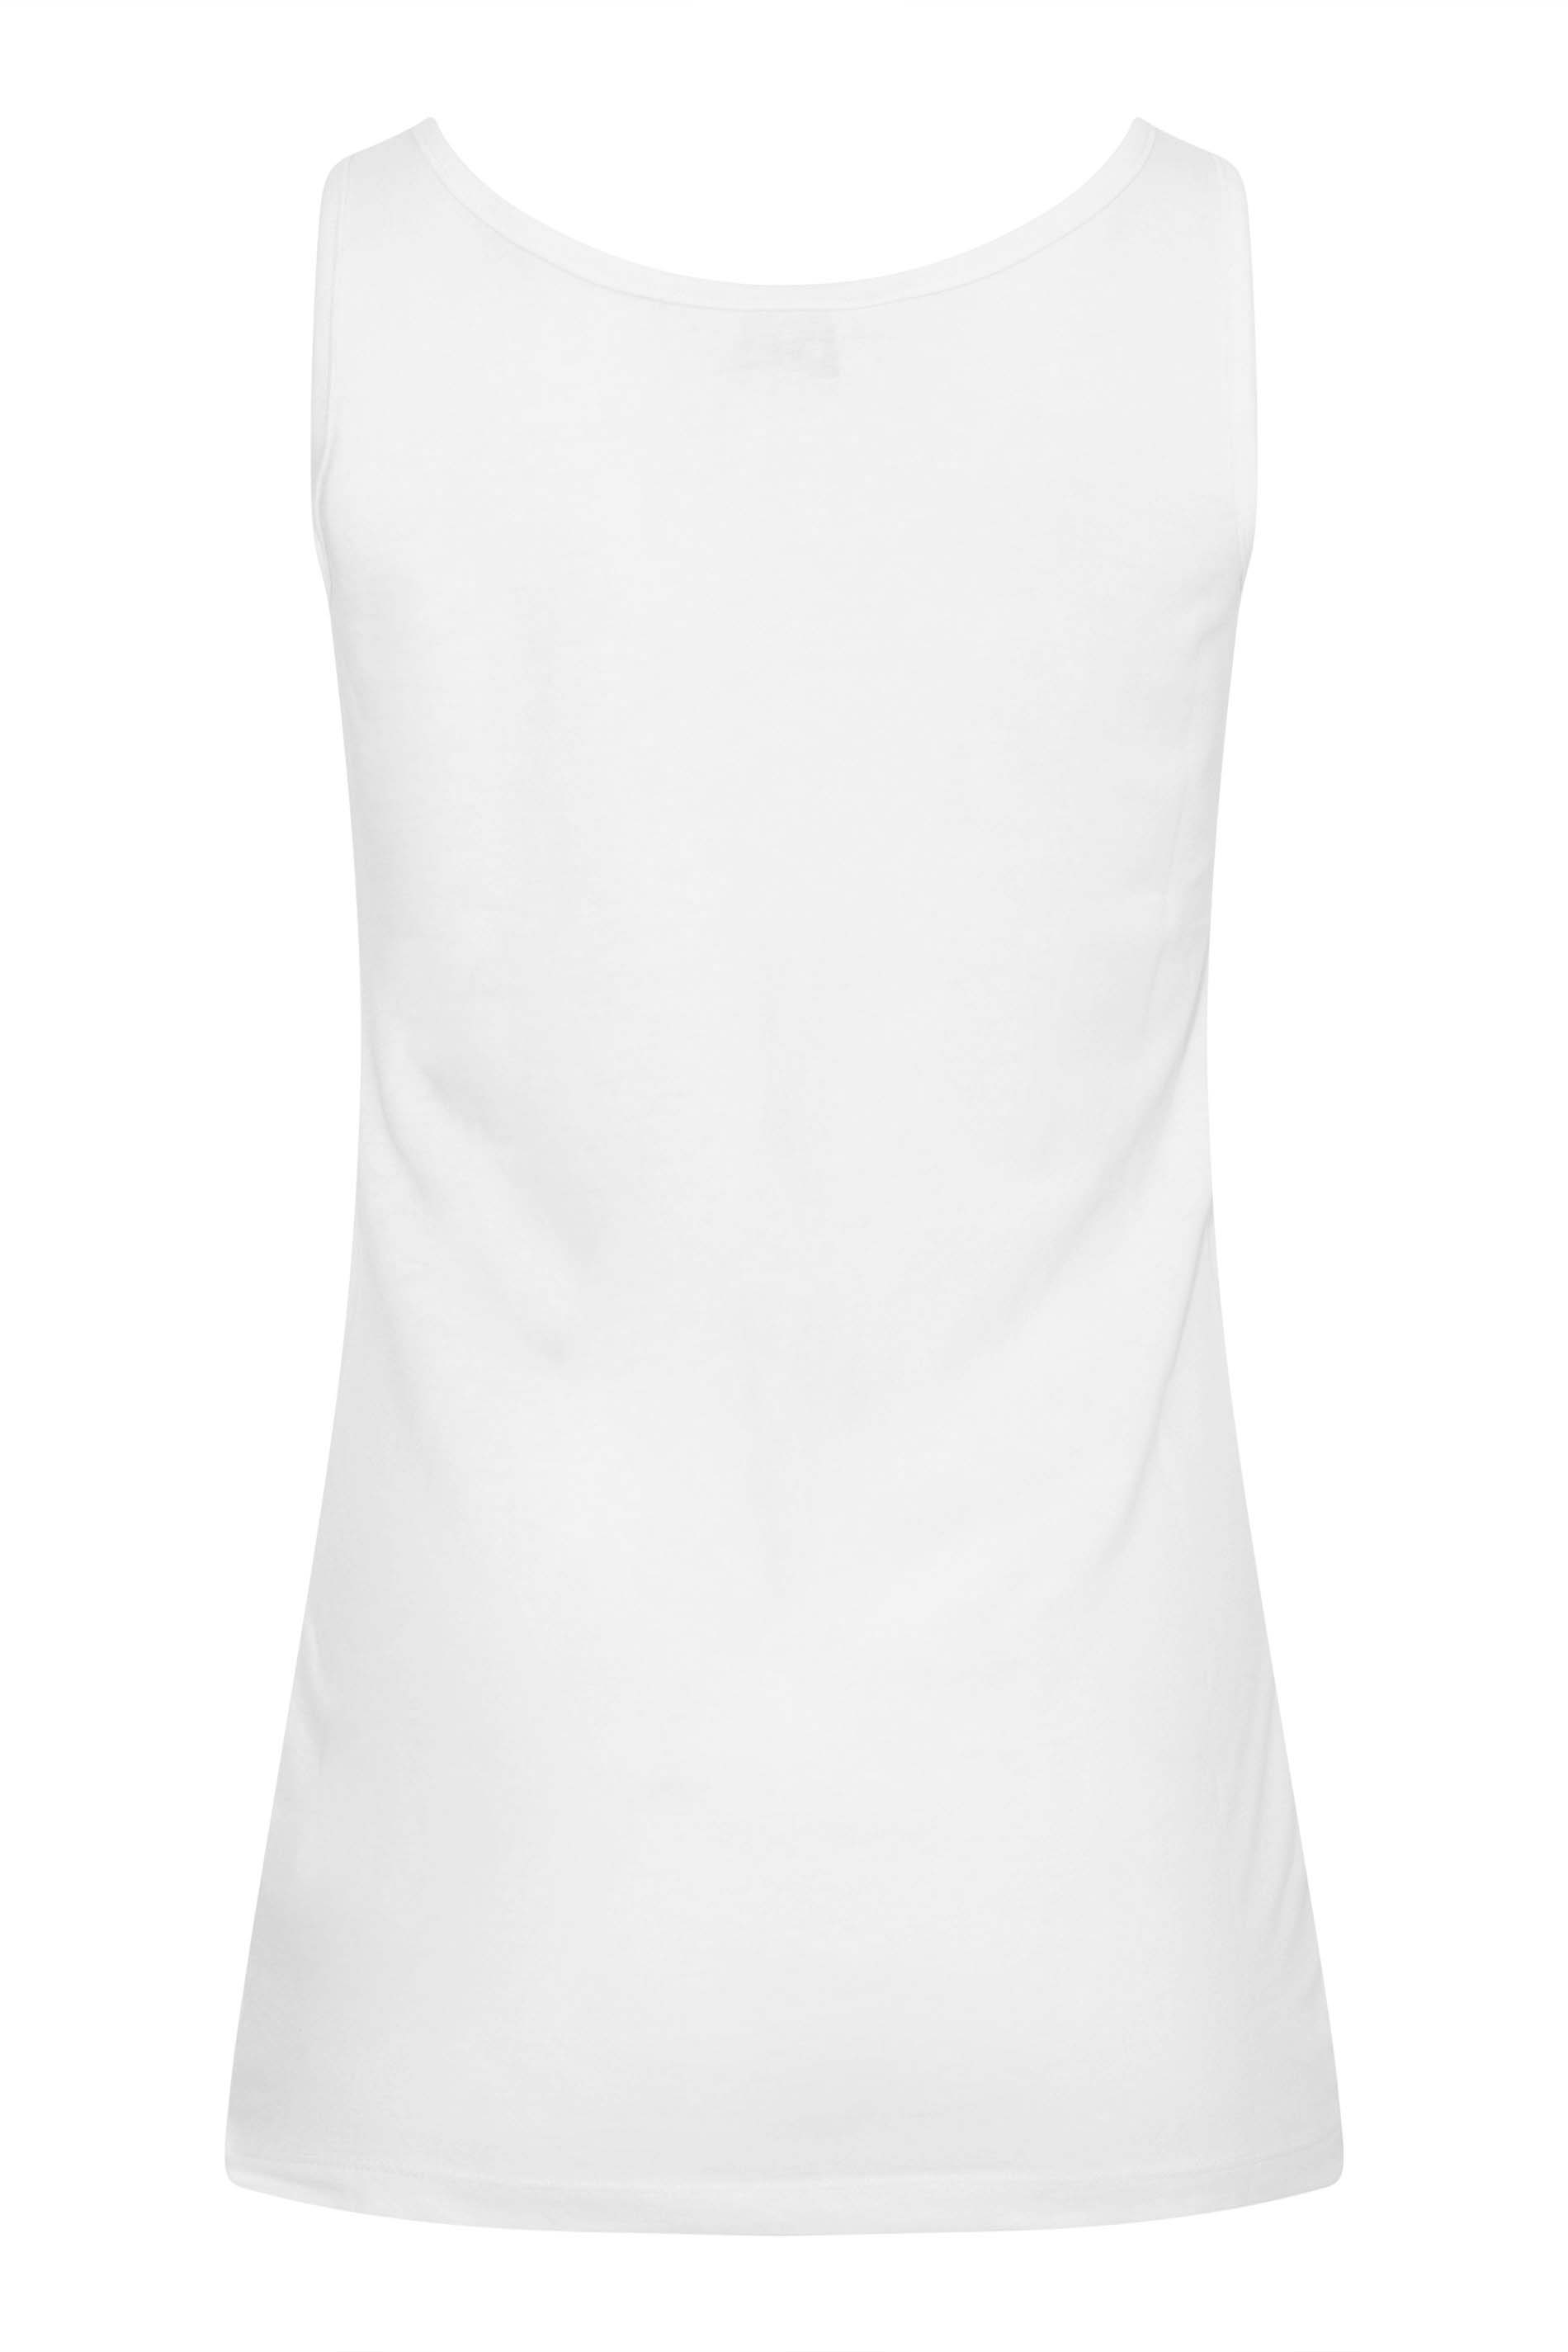 LTS 2 PACK Tall Women's Black & White Vest Tops